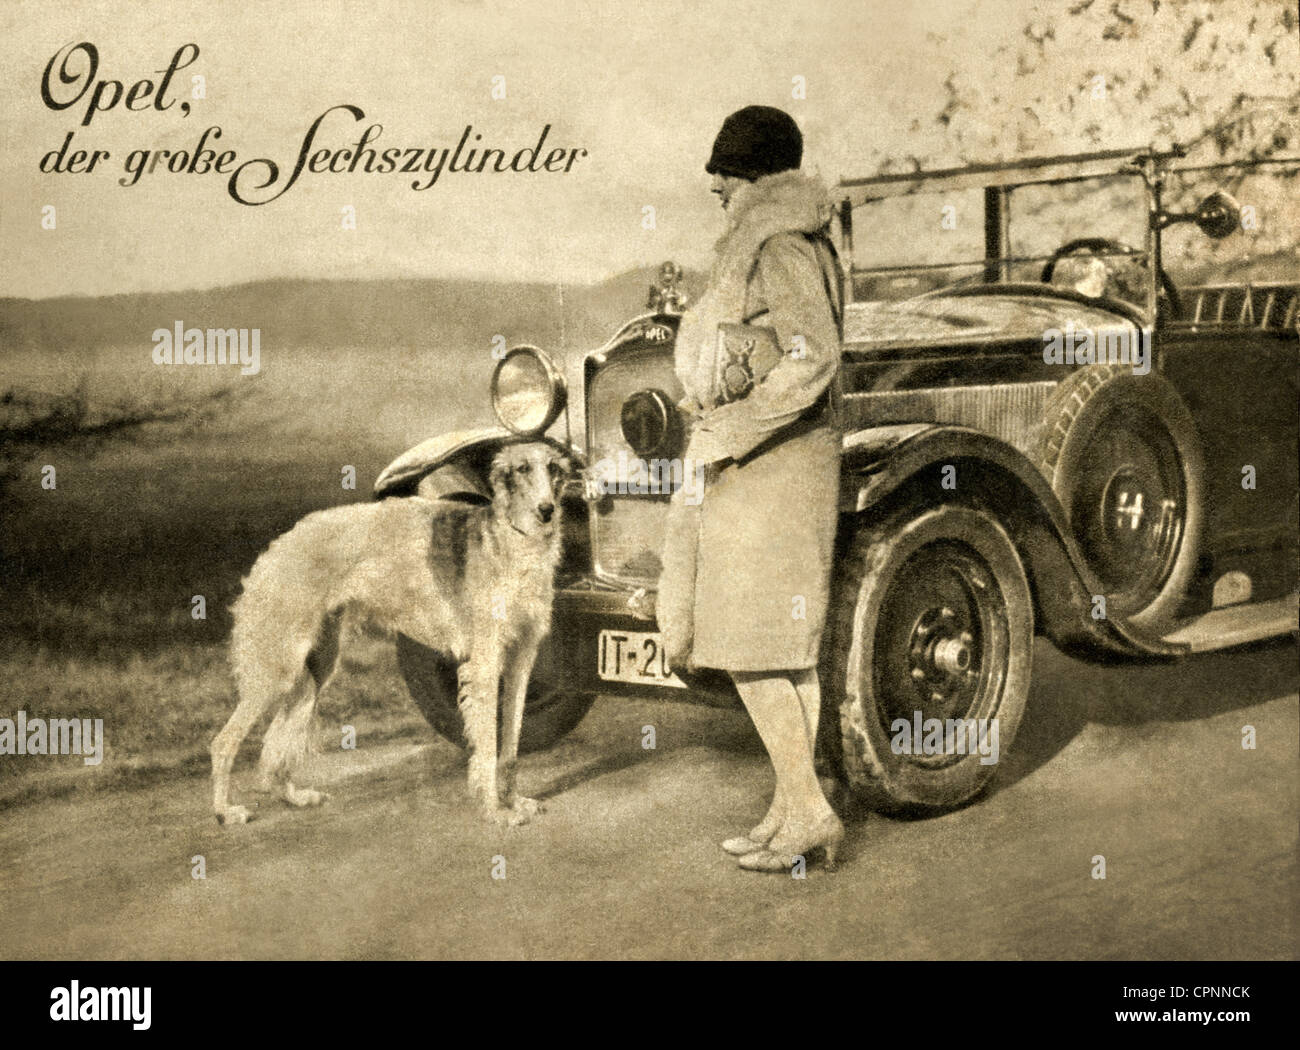 Transport / transport, voiture, variantes de véhicule, Opel, le grand six cylindres, capacité de cylindre de 3160 centimètres cubes, publicité de magazine, Allemagne, 1927, droits additionnels-Clearences-non disponible Banque D'Images